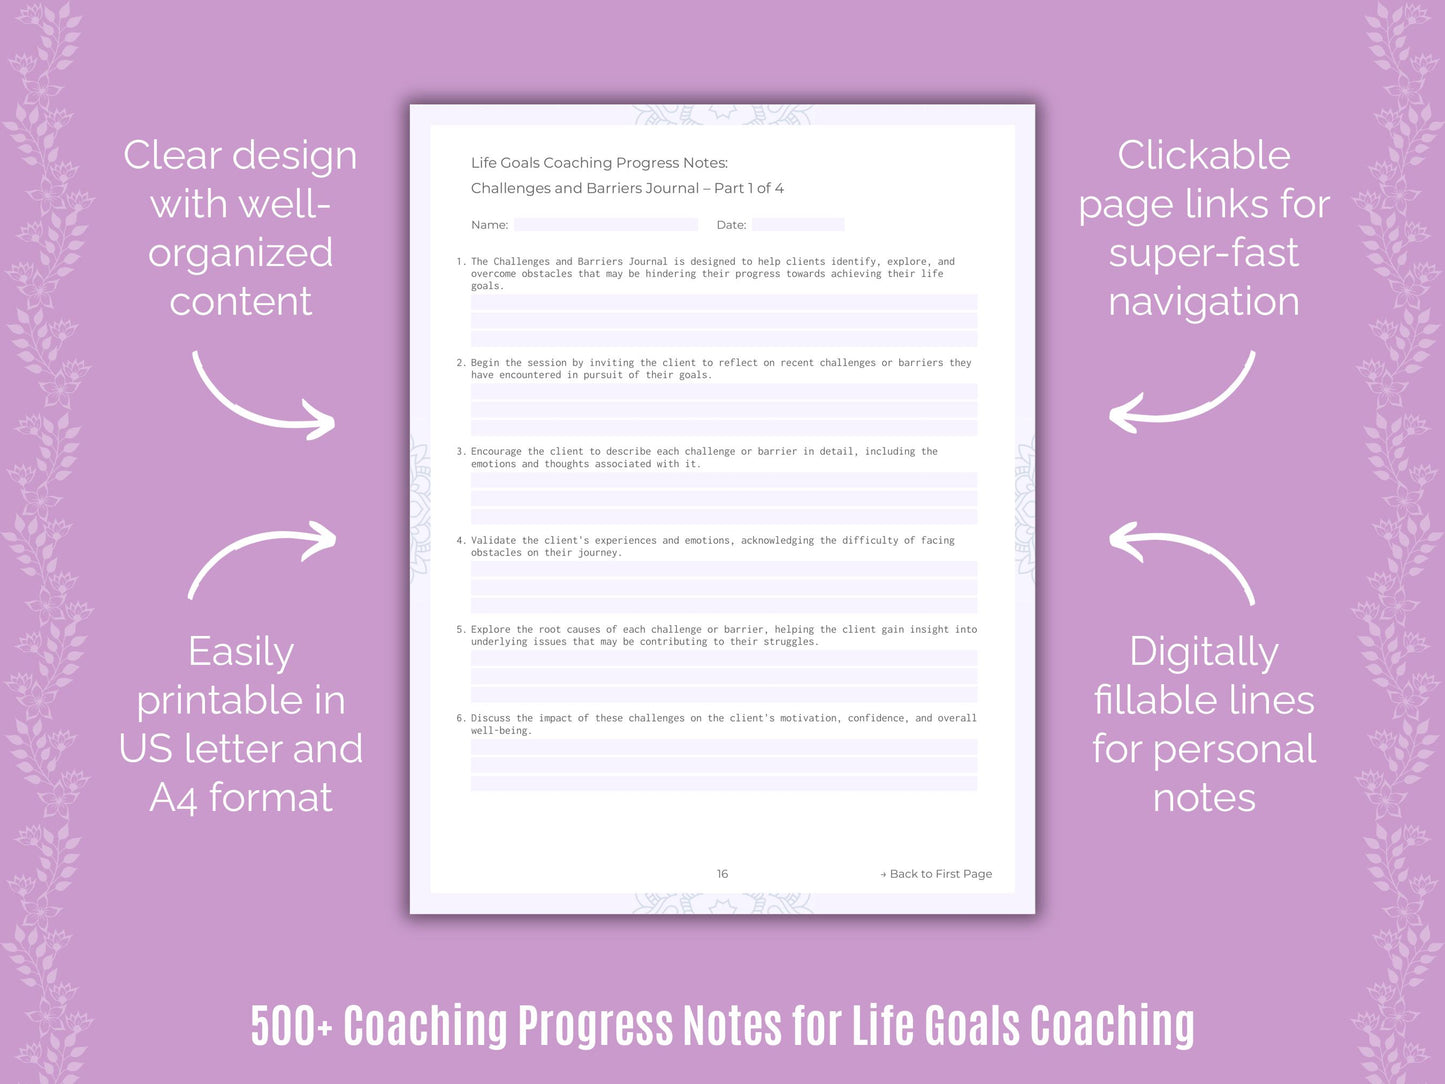 Coaching Worksheets